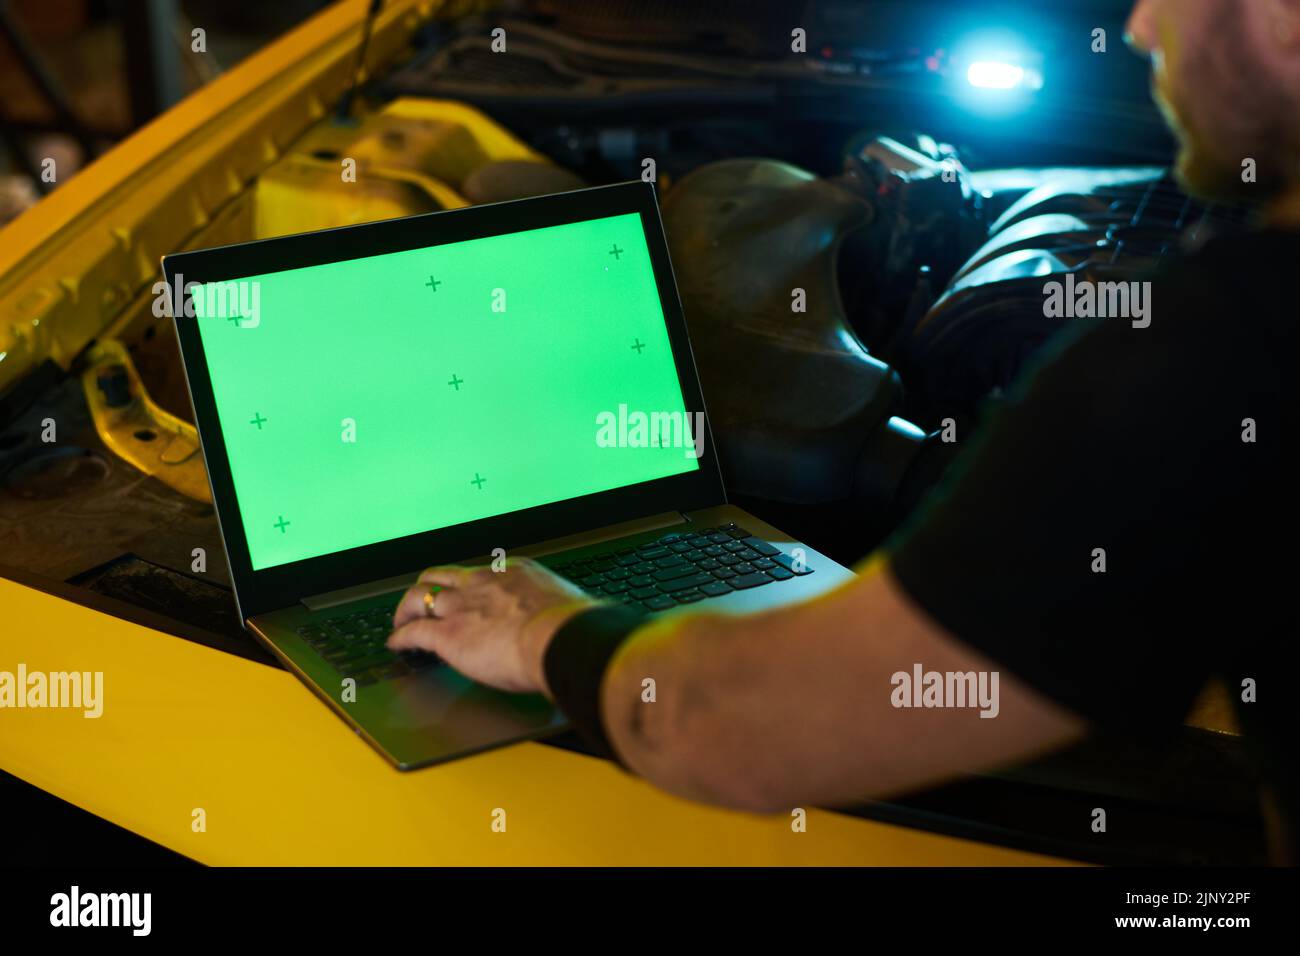 Mano de mecánico joven o reparador en el teclado del ordenador portátil con pantalla verde en el motor del vehículo con capó abierto durante el diagnóstico Foto de stock